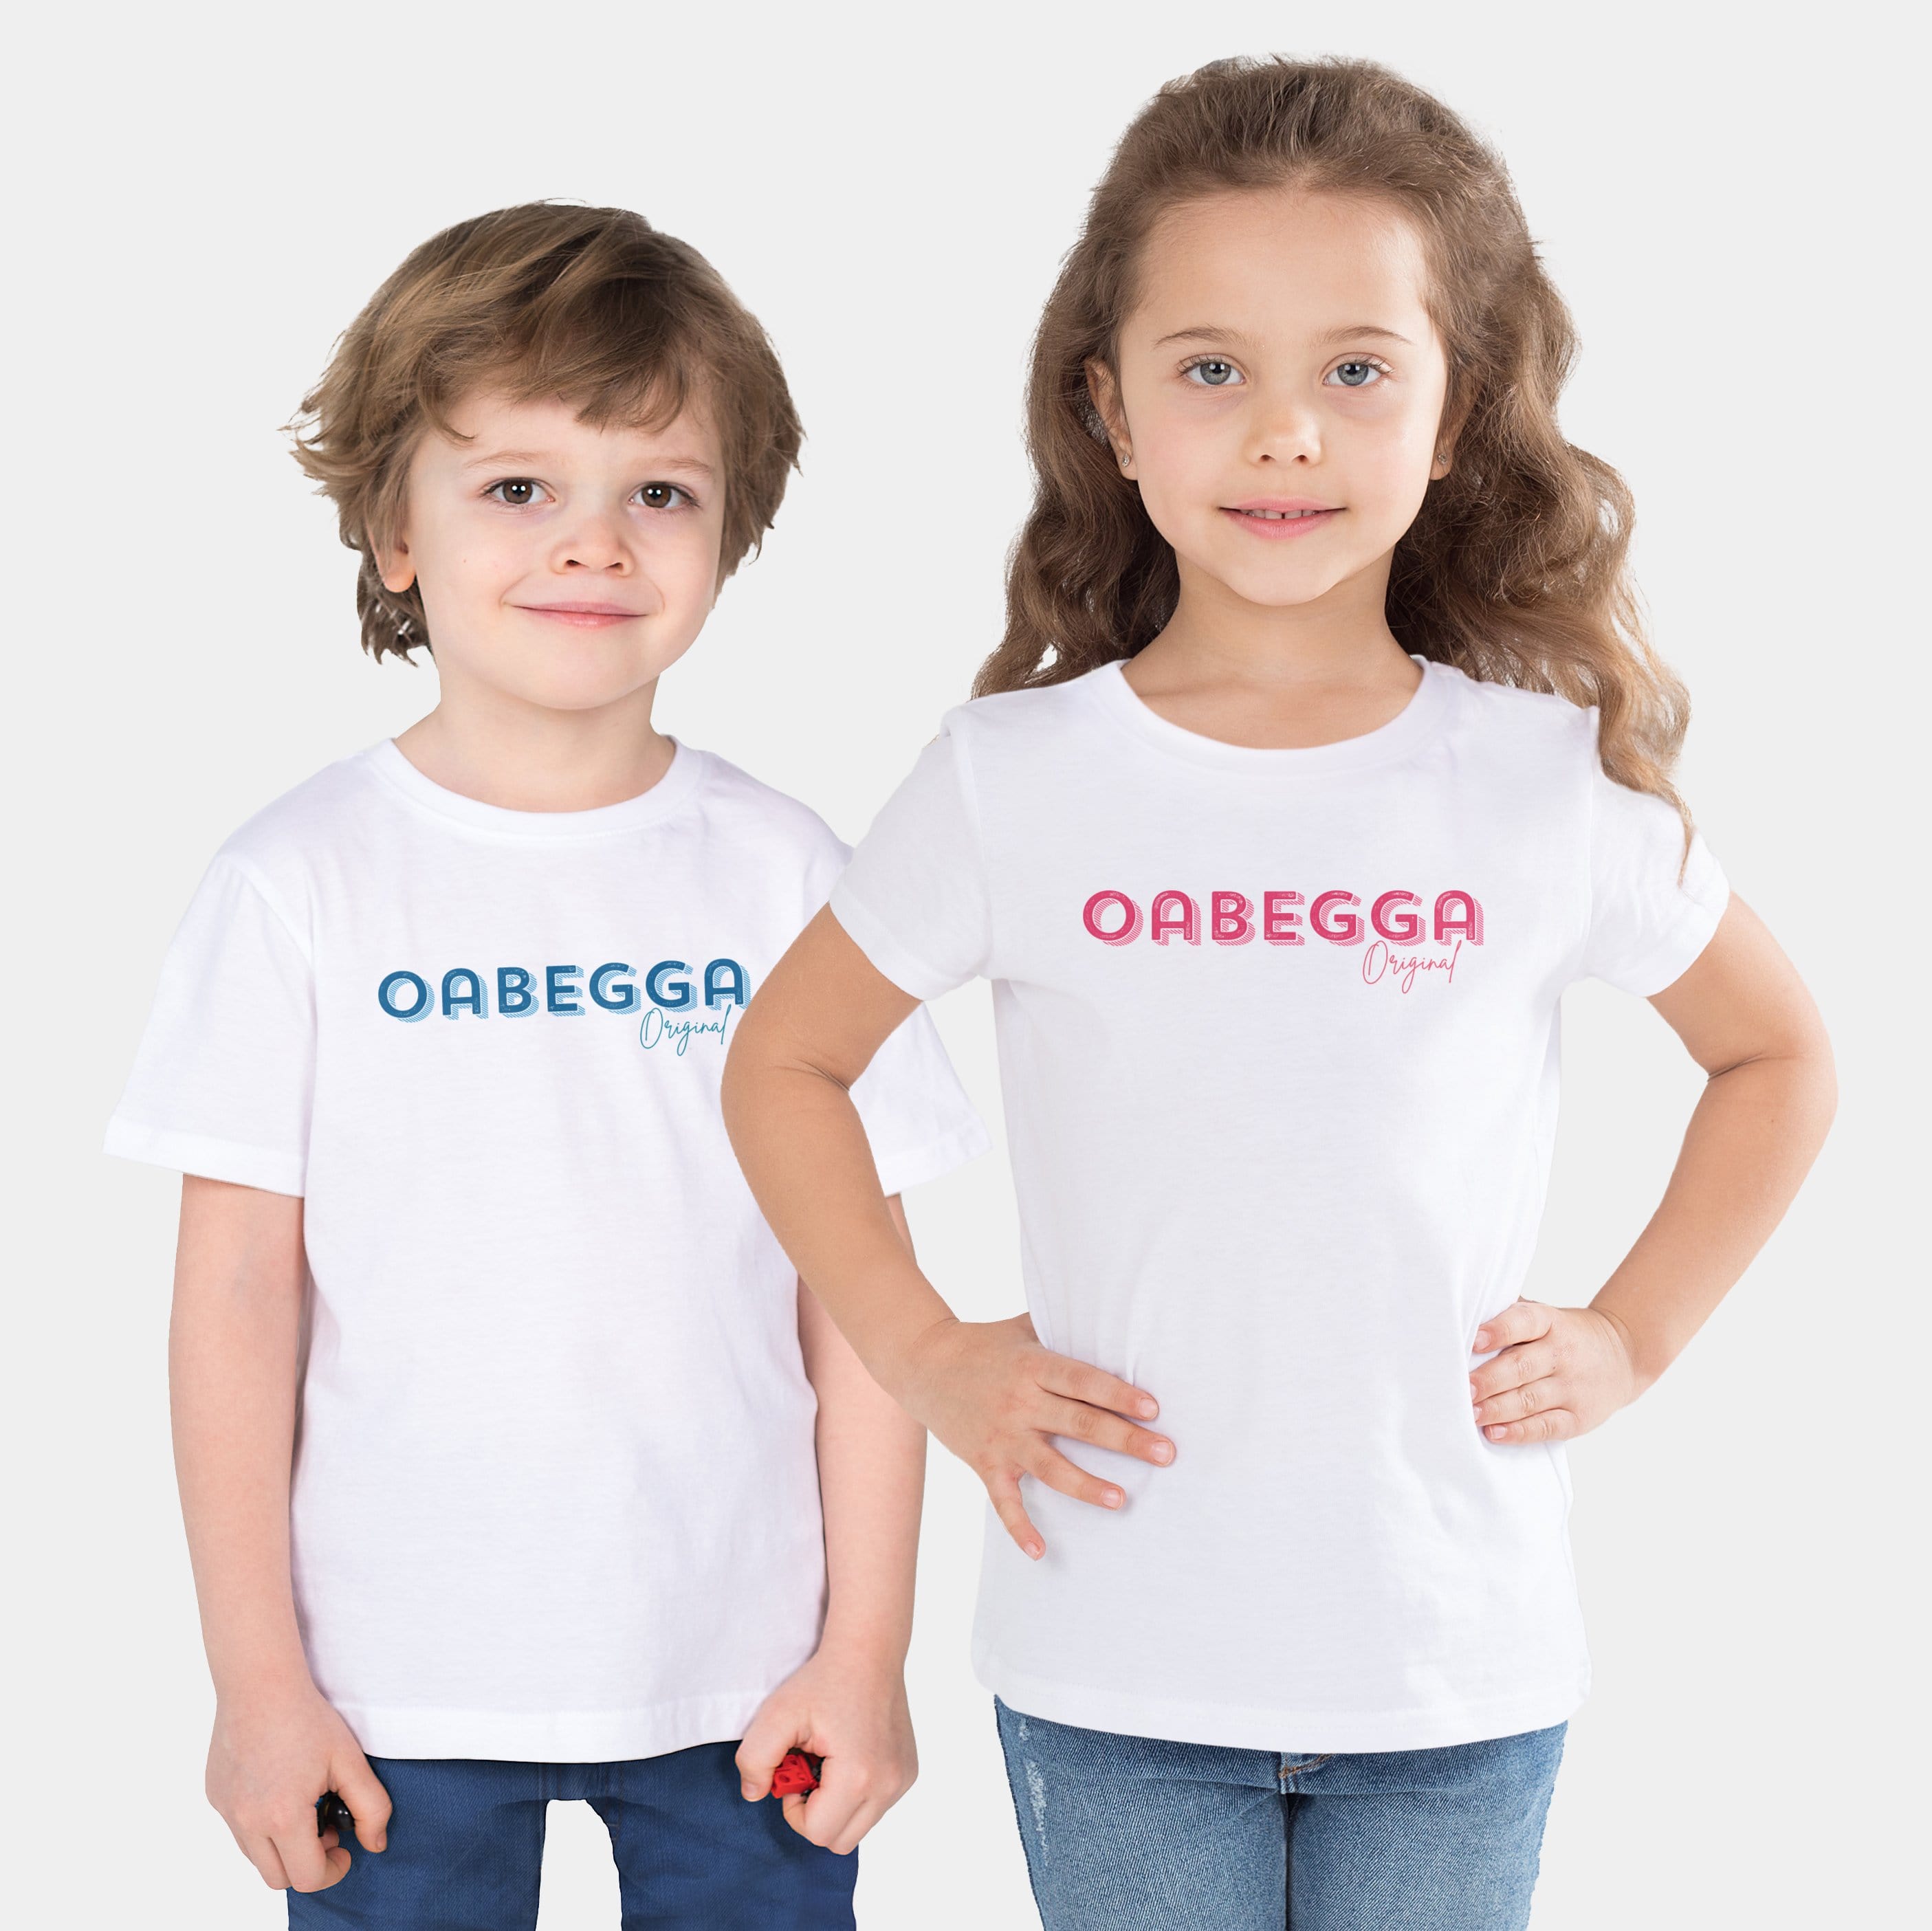 HEITER & LÄSSIG Kinder-T-Shirt "Oabegga Original" 92/98 / weiß - aus nachhaltiger und fairer Produktion